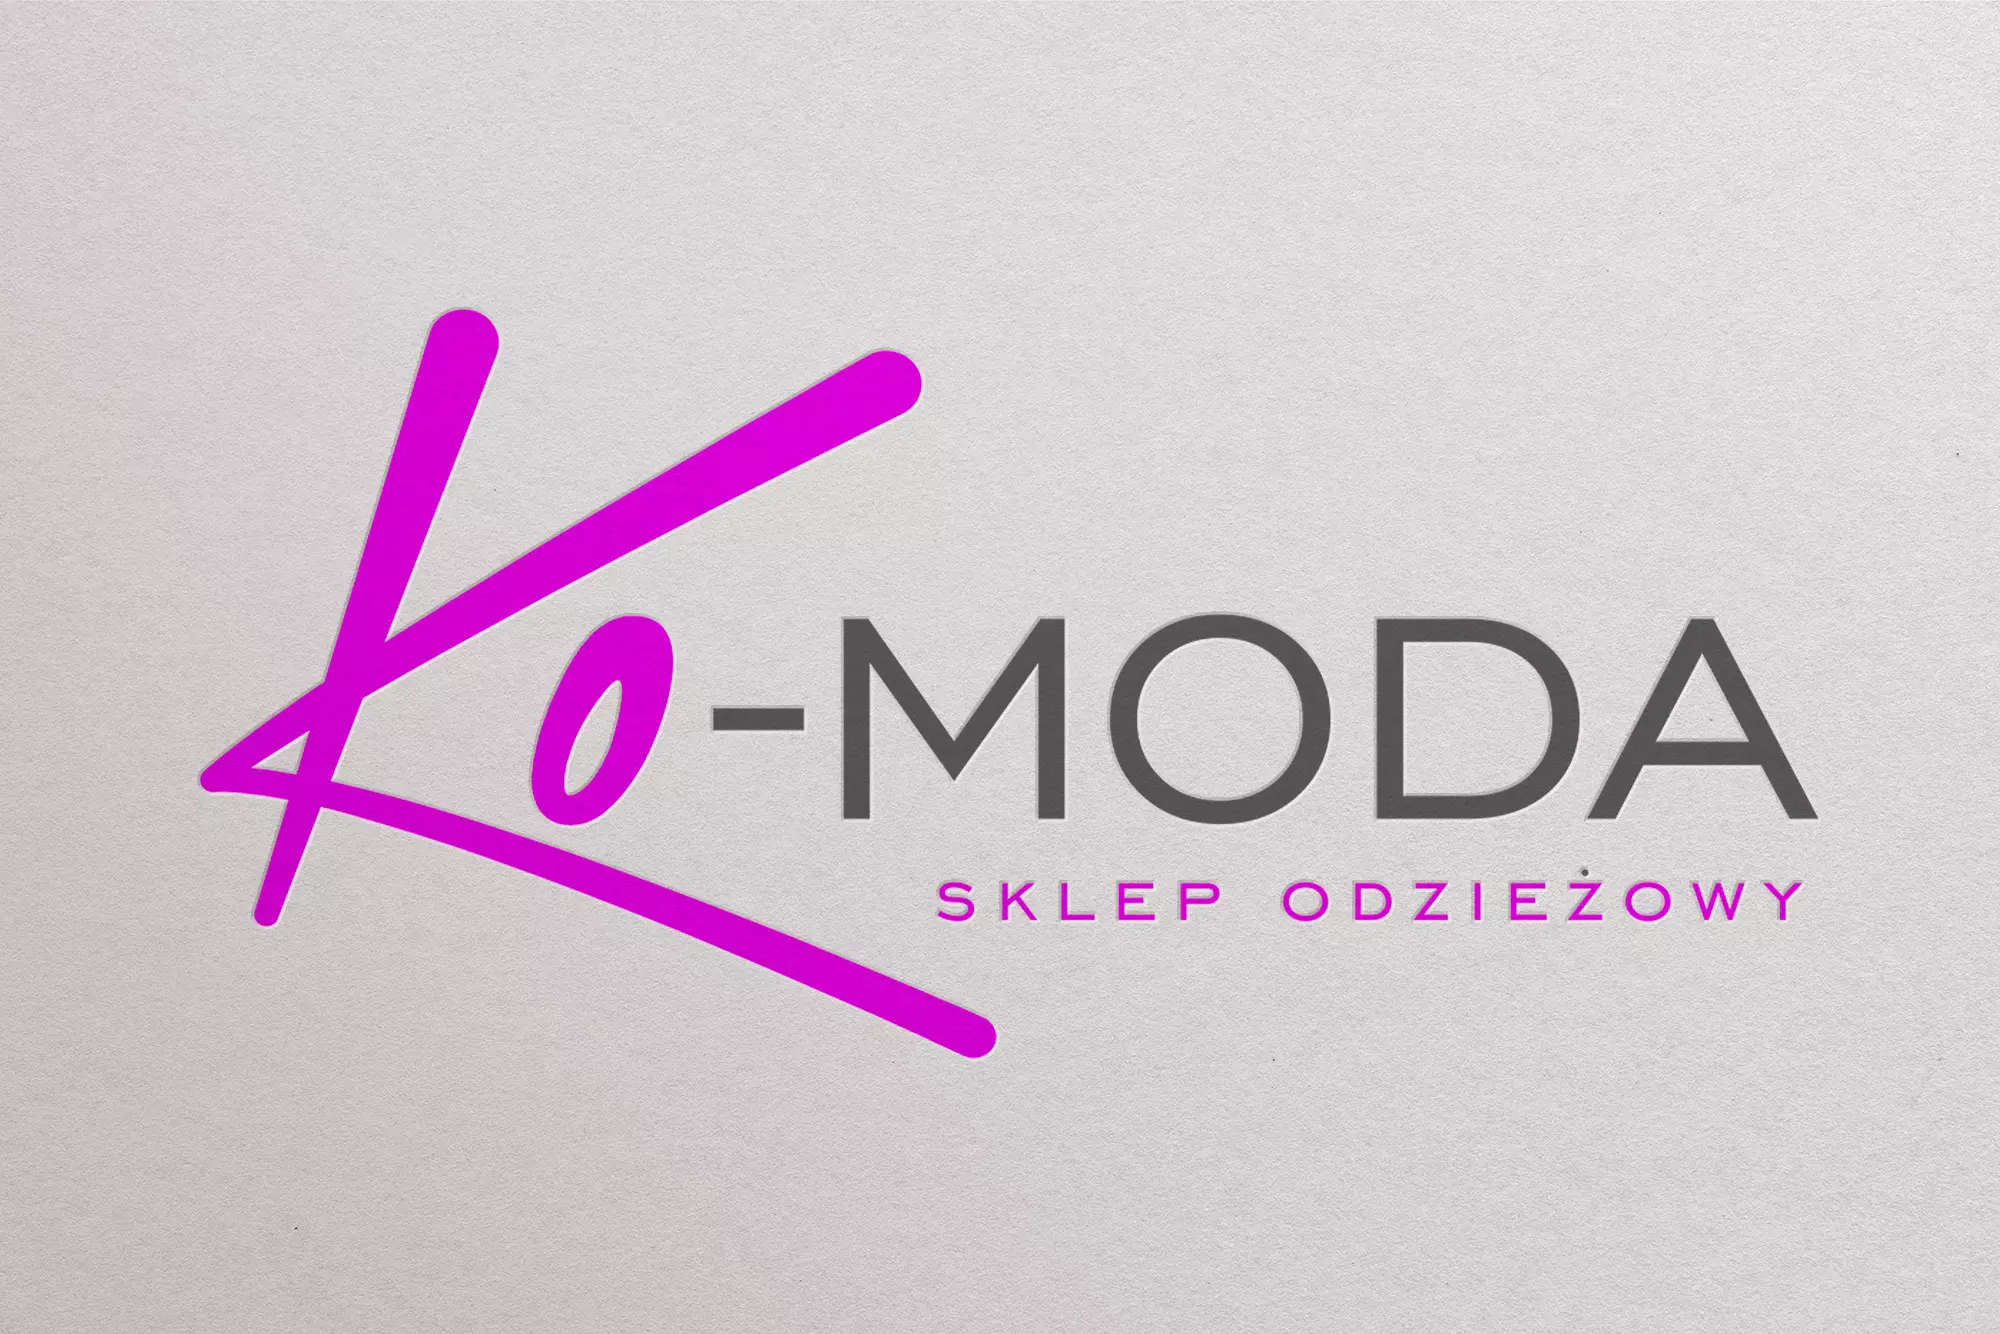 Ko- MODA - wizualizacja loga